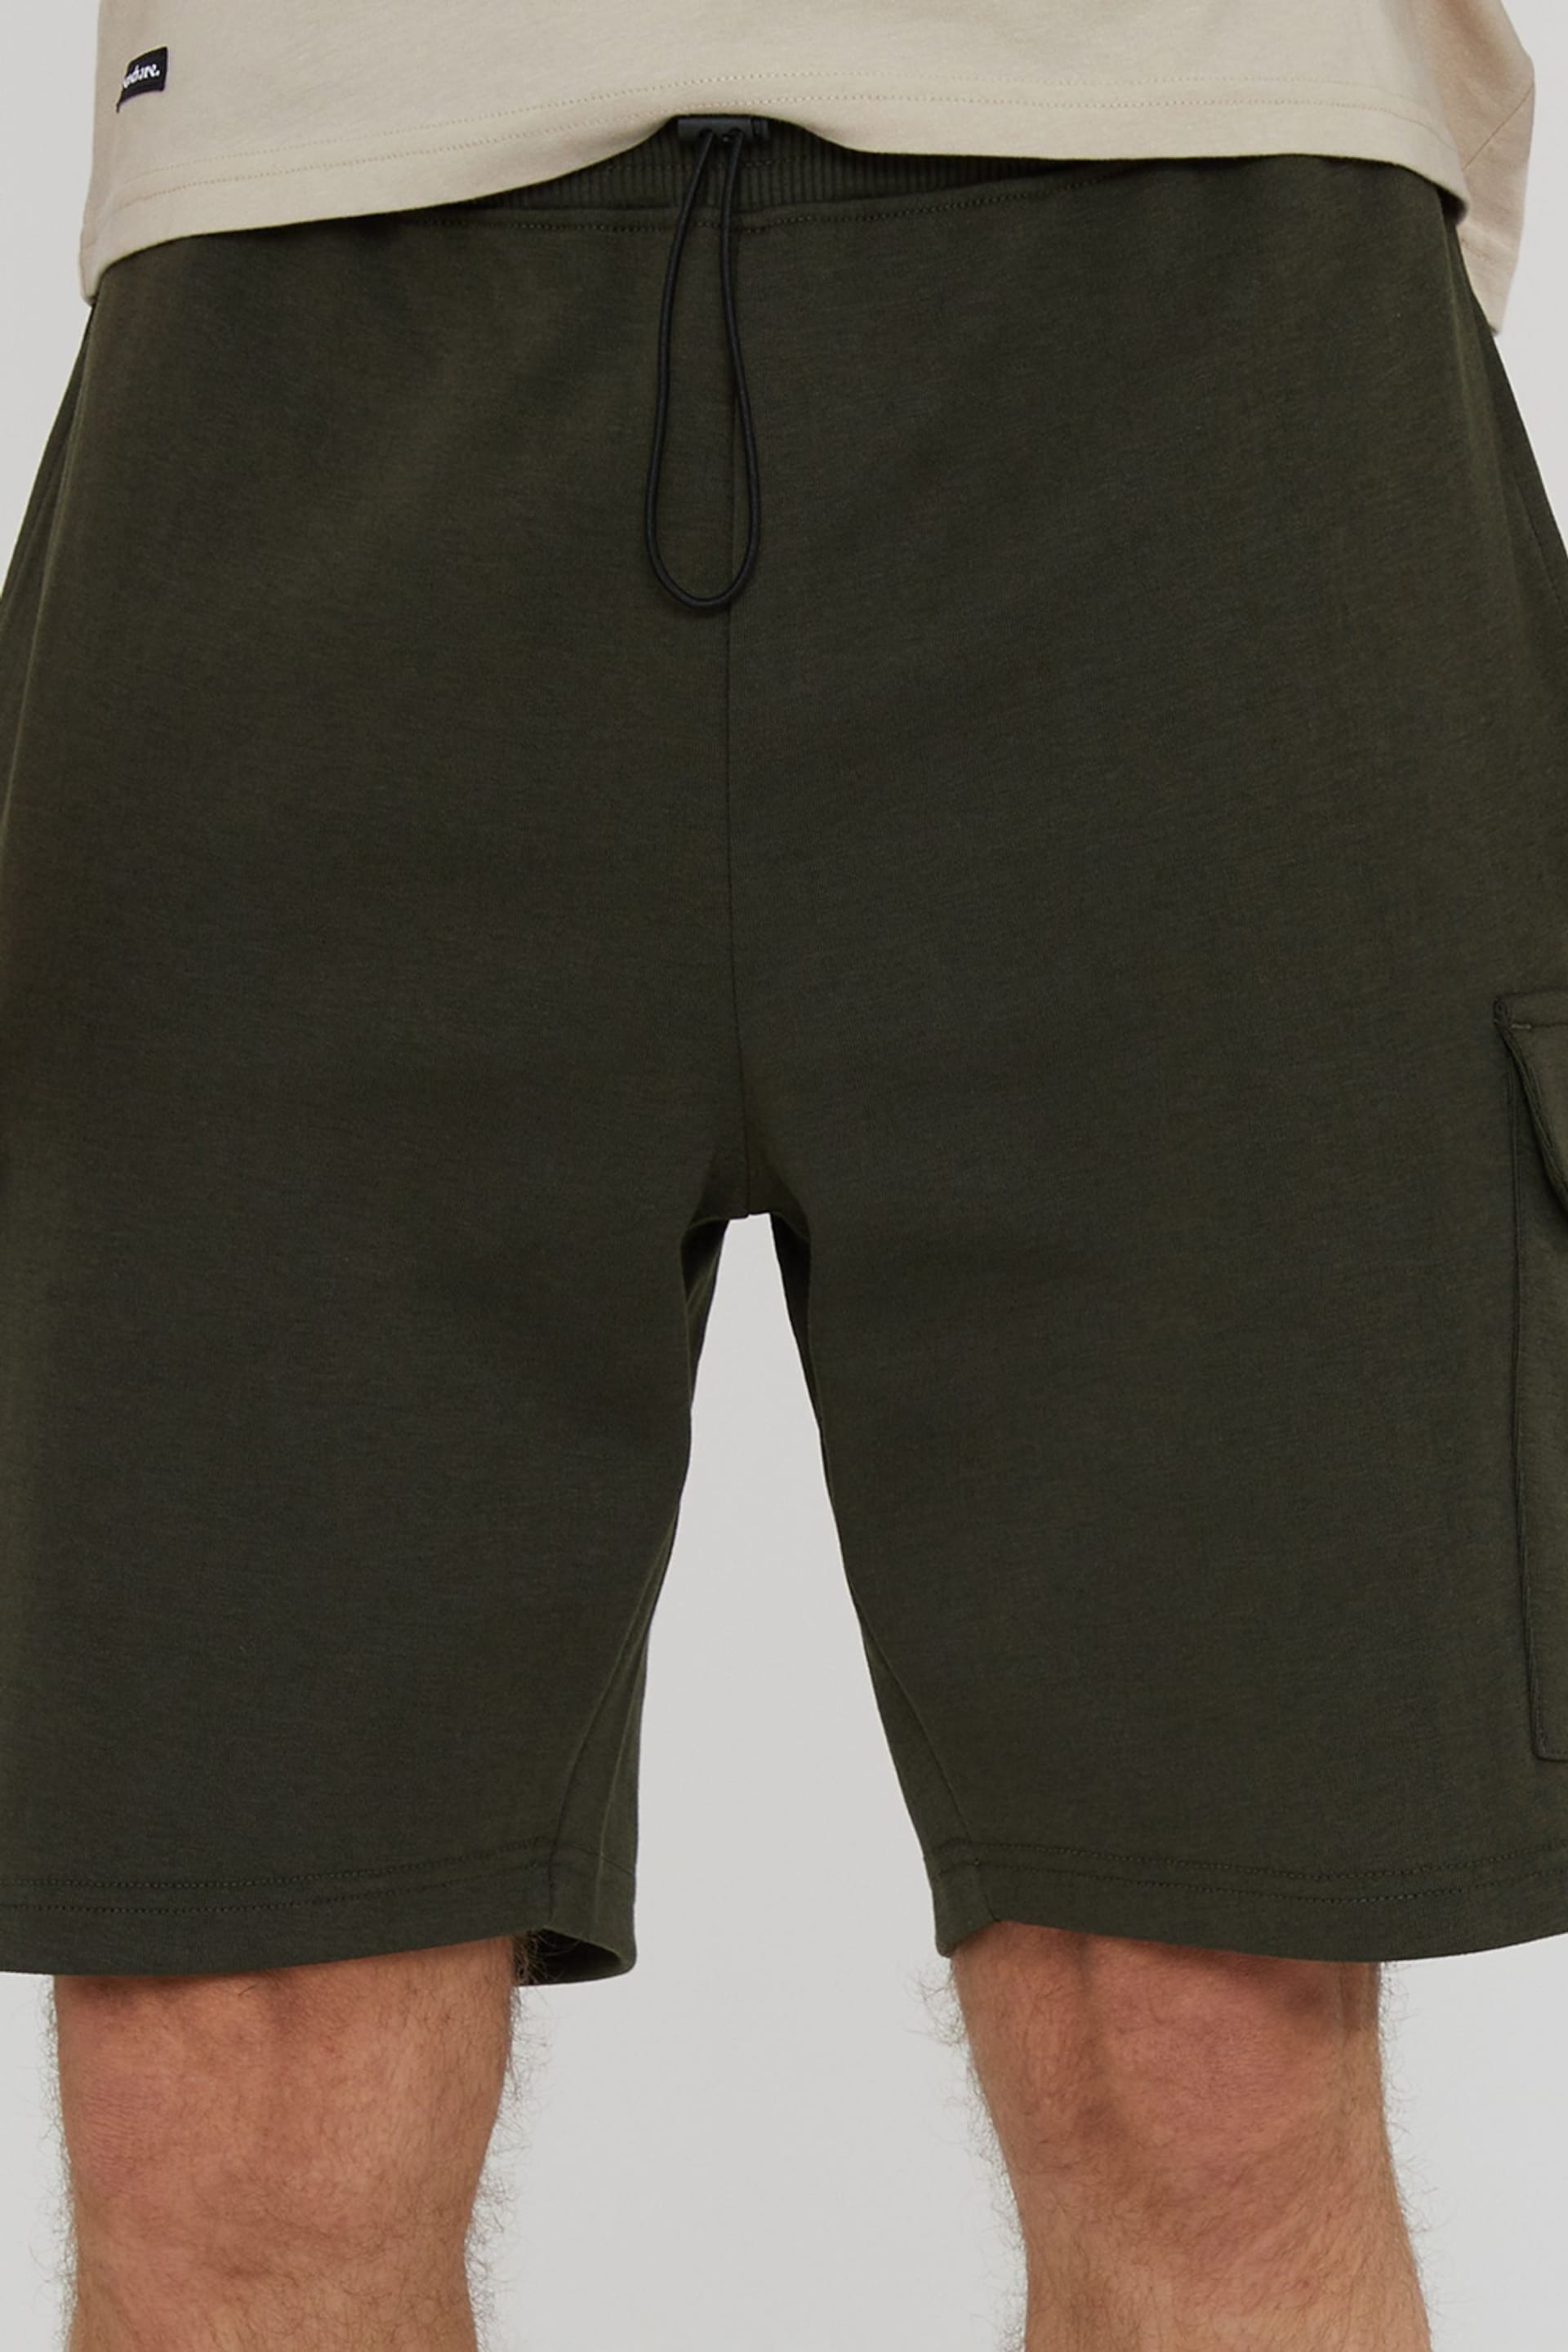 Threadbare Khaki Cargo Pocket Sweat Shorts - Image 4 of 4